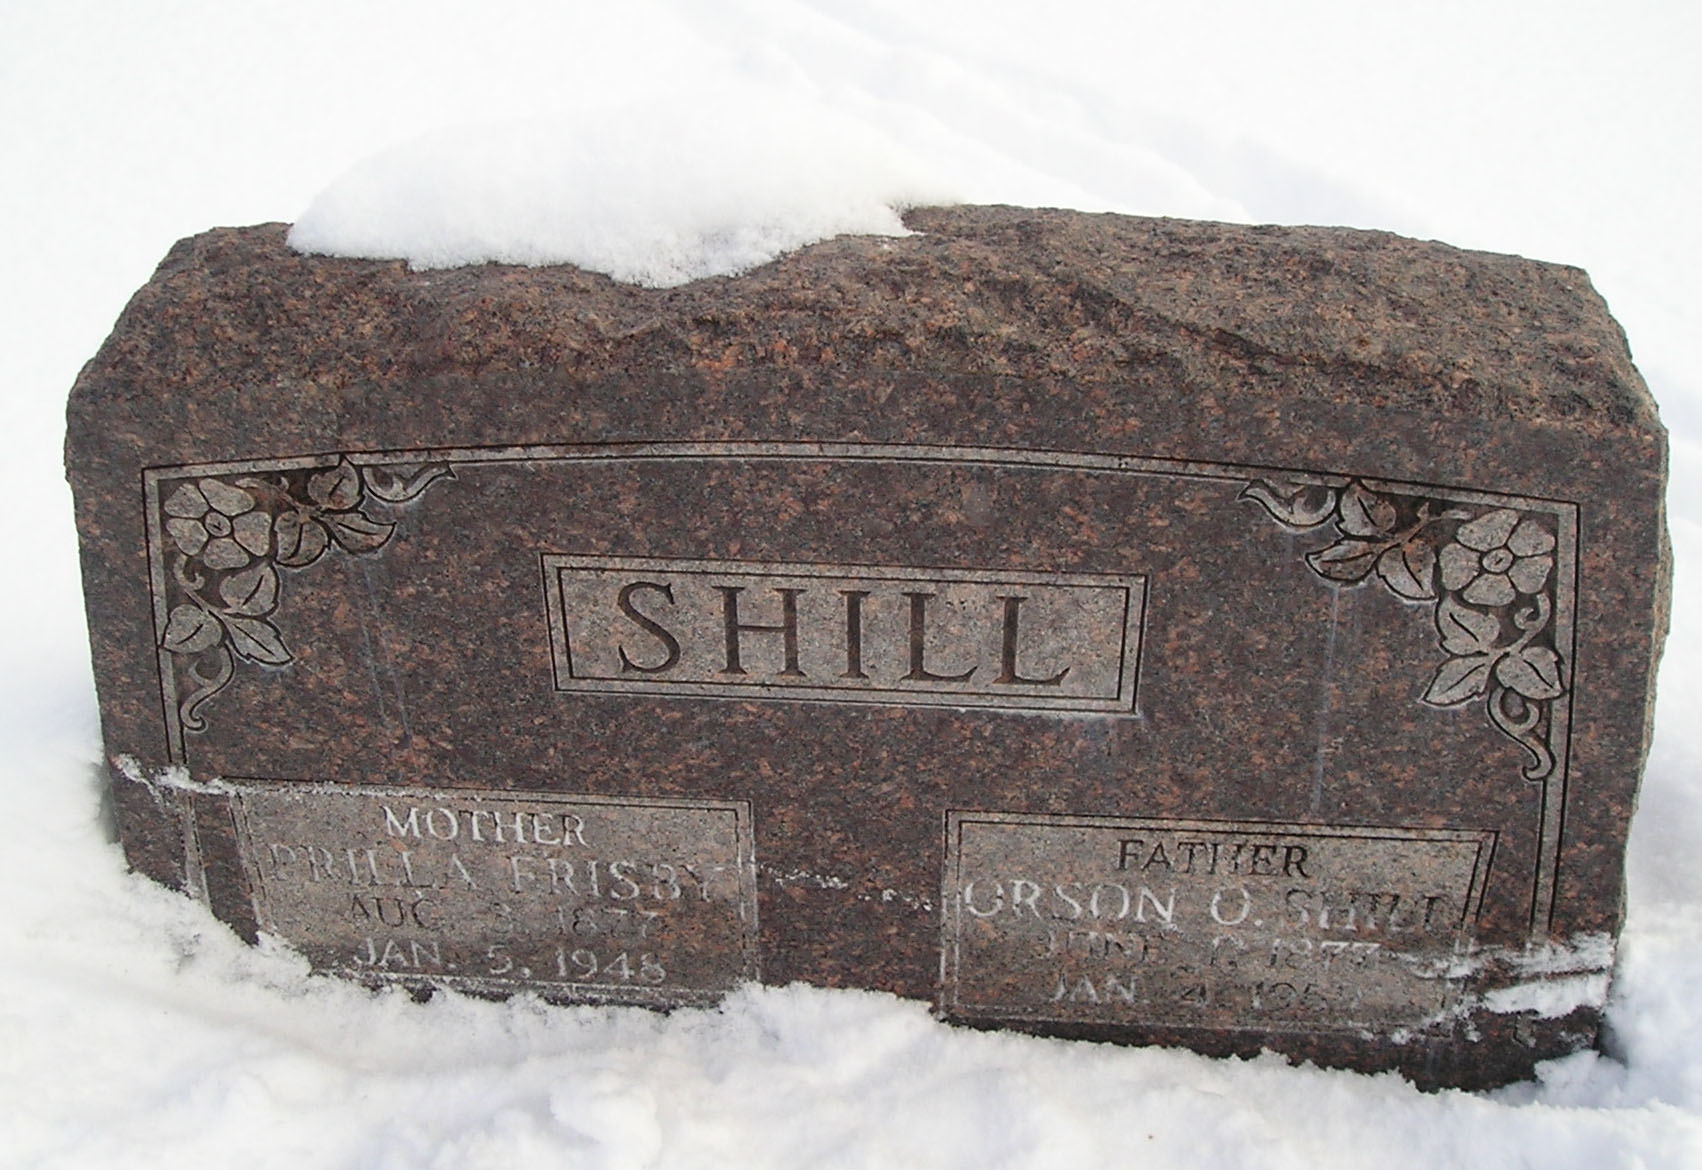 Martha Priscilla Frisby Shill and Orson Obed Shill gravestone